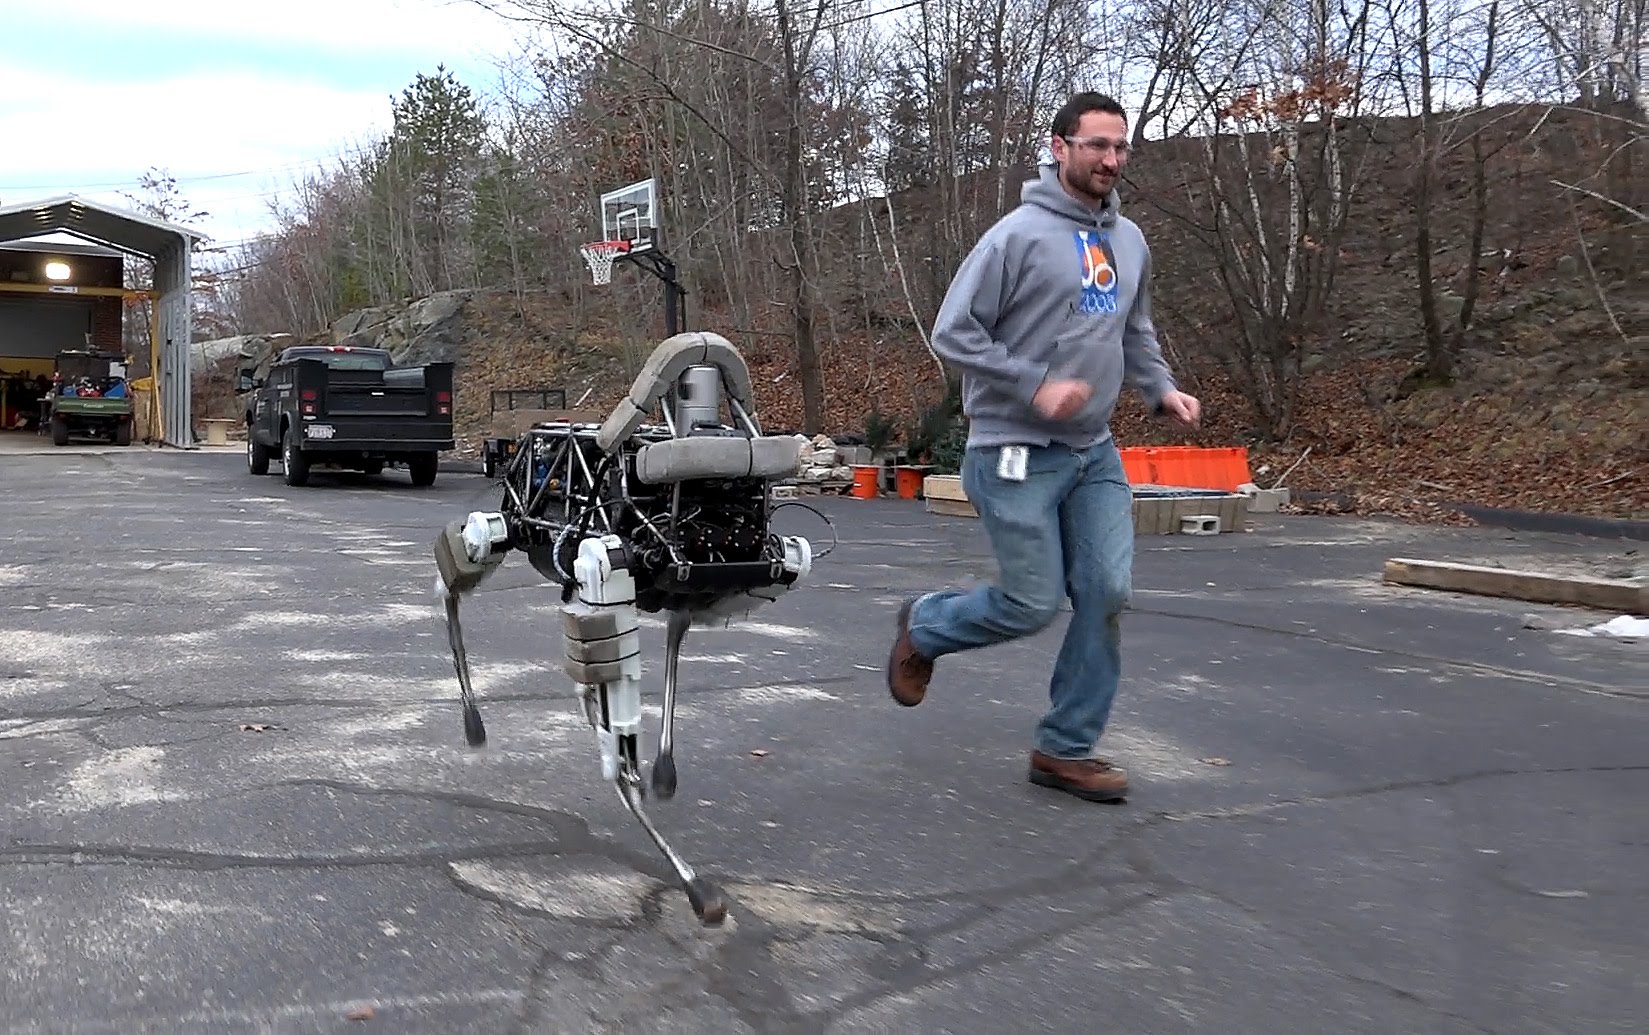 VIDEO: Jaunie Google robotsuņi ir burtiski neapturami un neiznīcināmi! (Introducing Spot!)